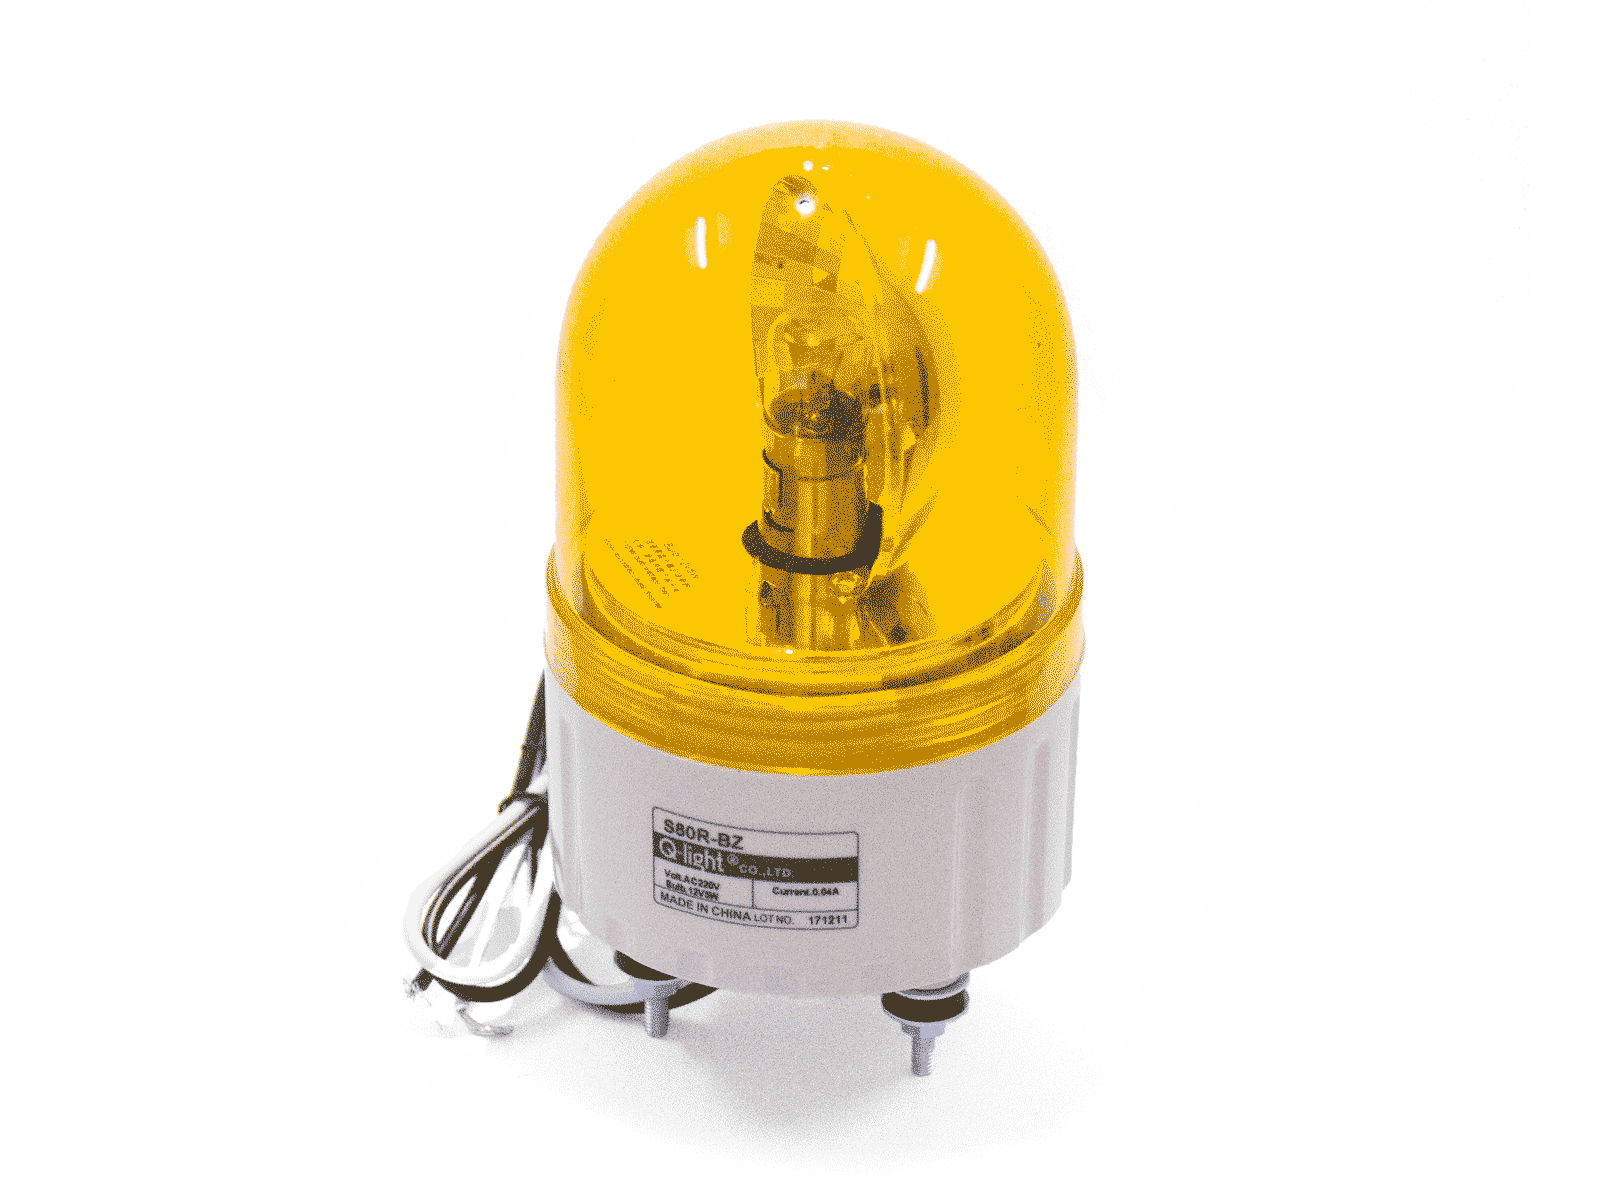 Đèn báo động Q-light S80R-BR